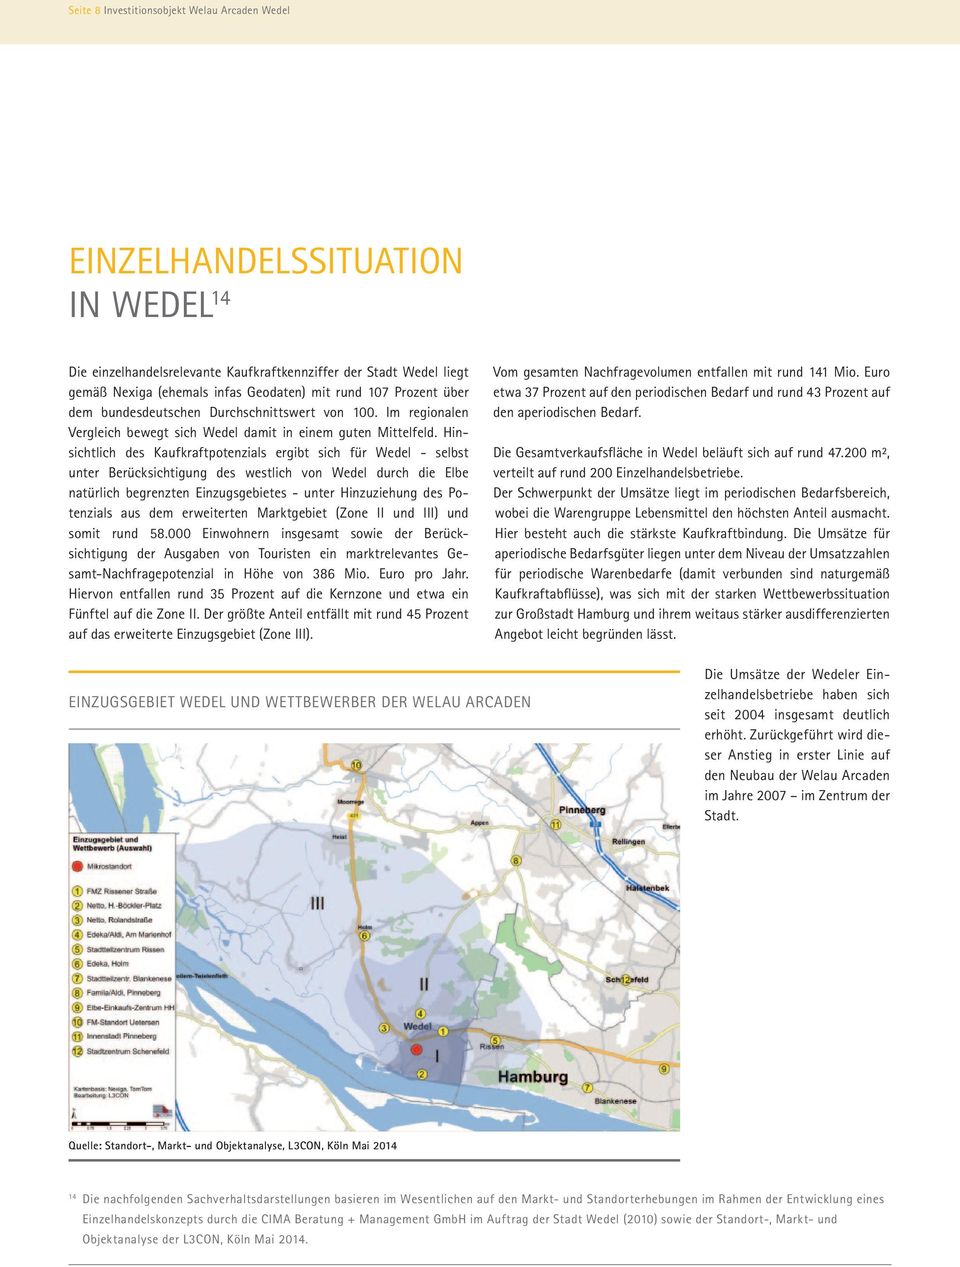 Hinsichtlich des Kaufkraftpotenzials ergibt sich für Wedel - selbst un ter Berücksichtigung des westlich von Wedel durch die Elbe natürlich begrenzten Einzugsgebietes - unter Hinzuziehung des Poten